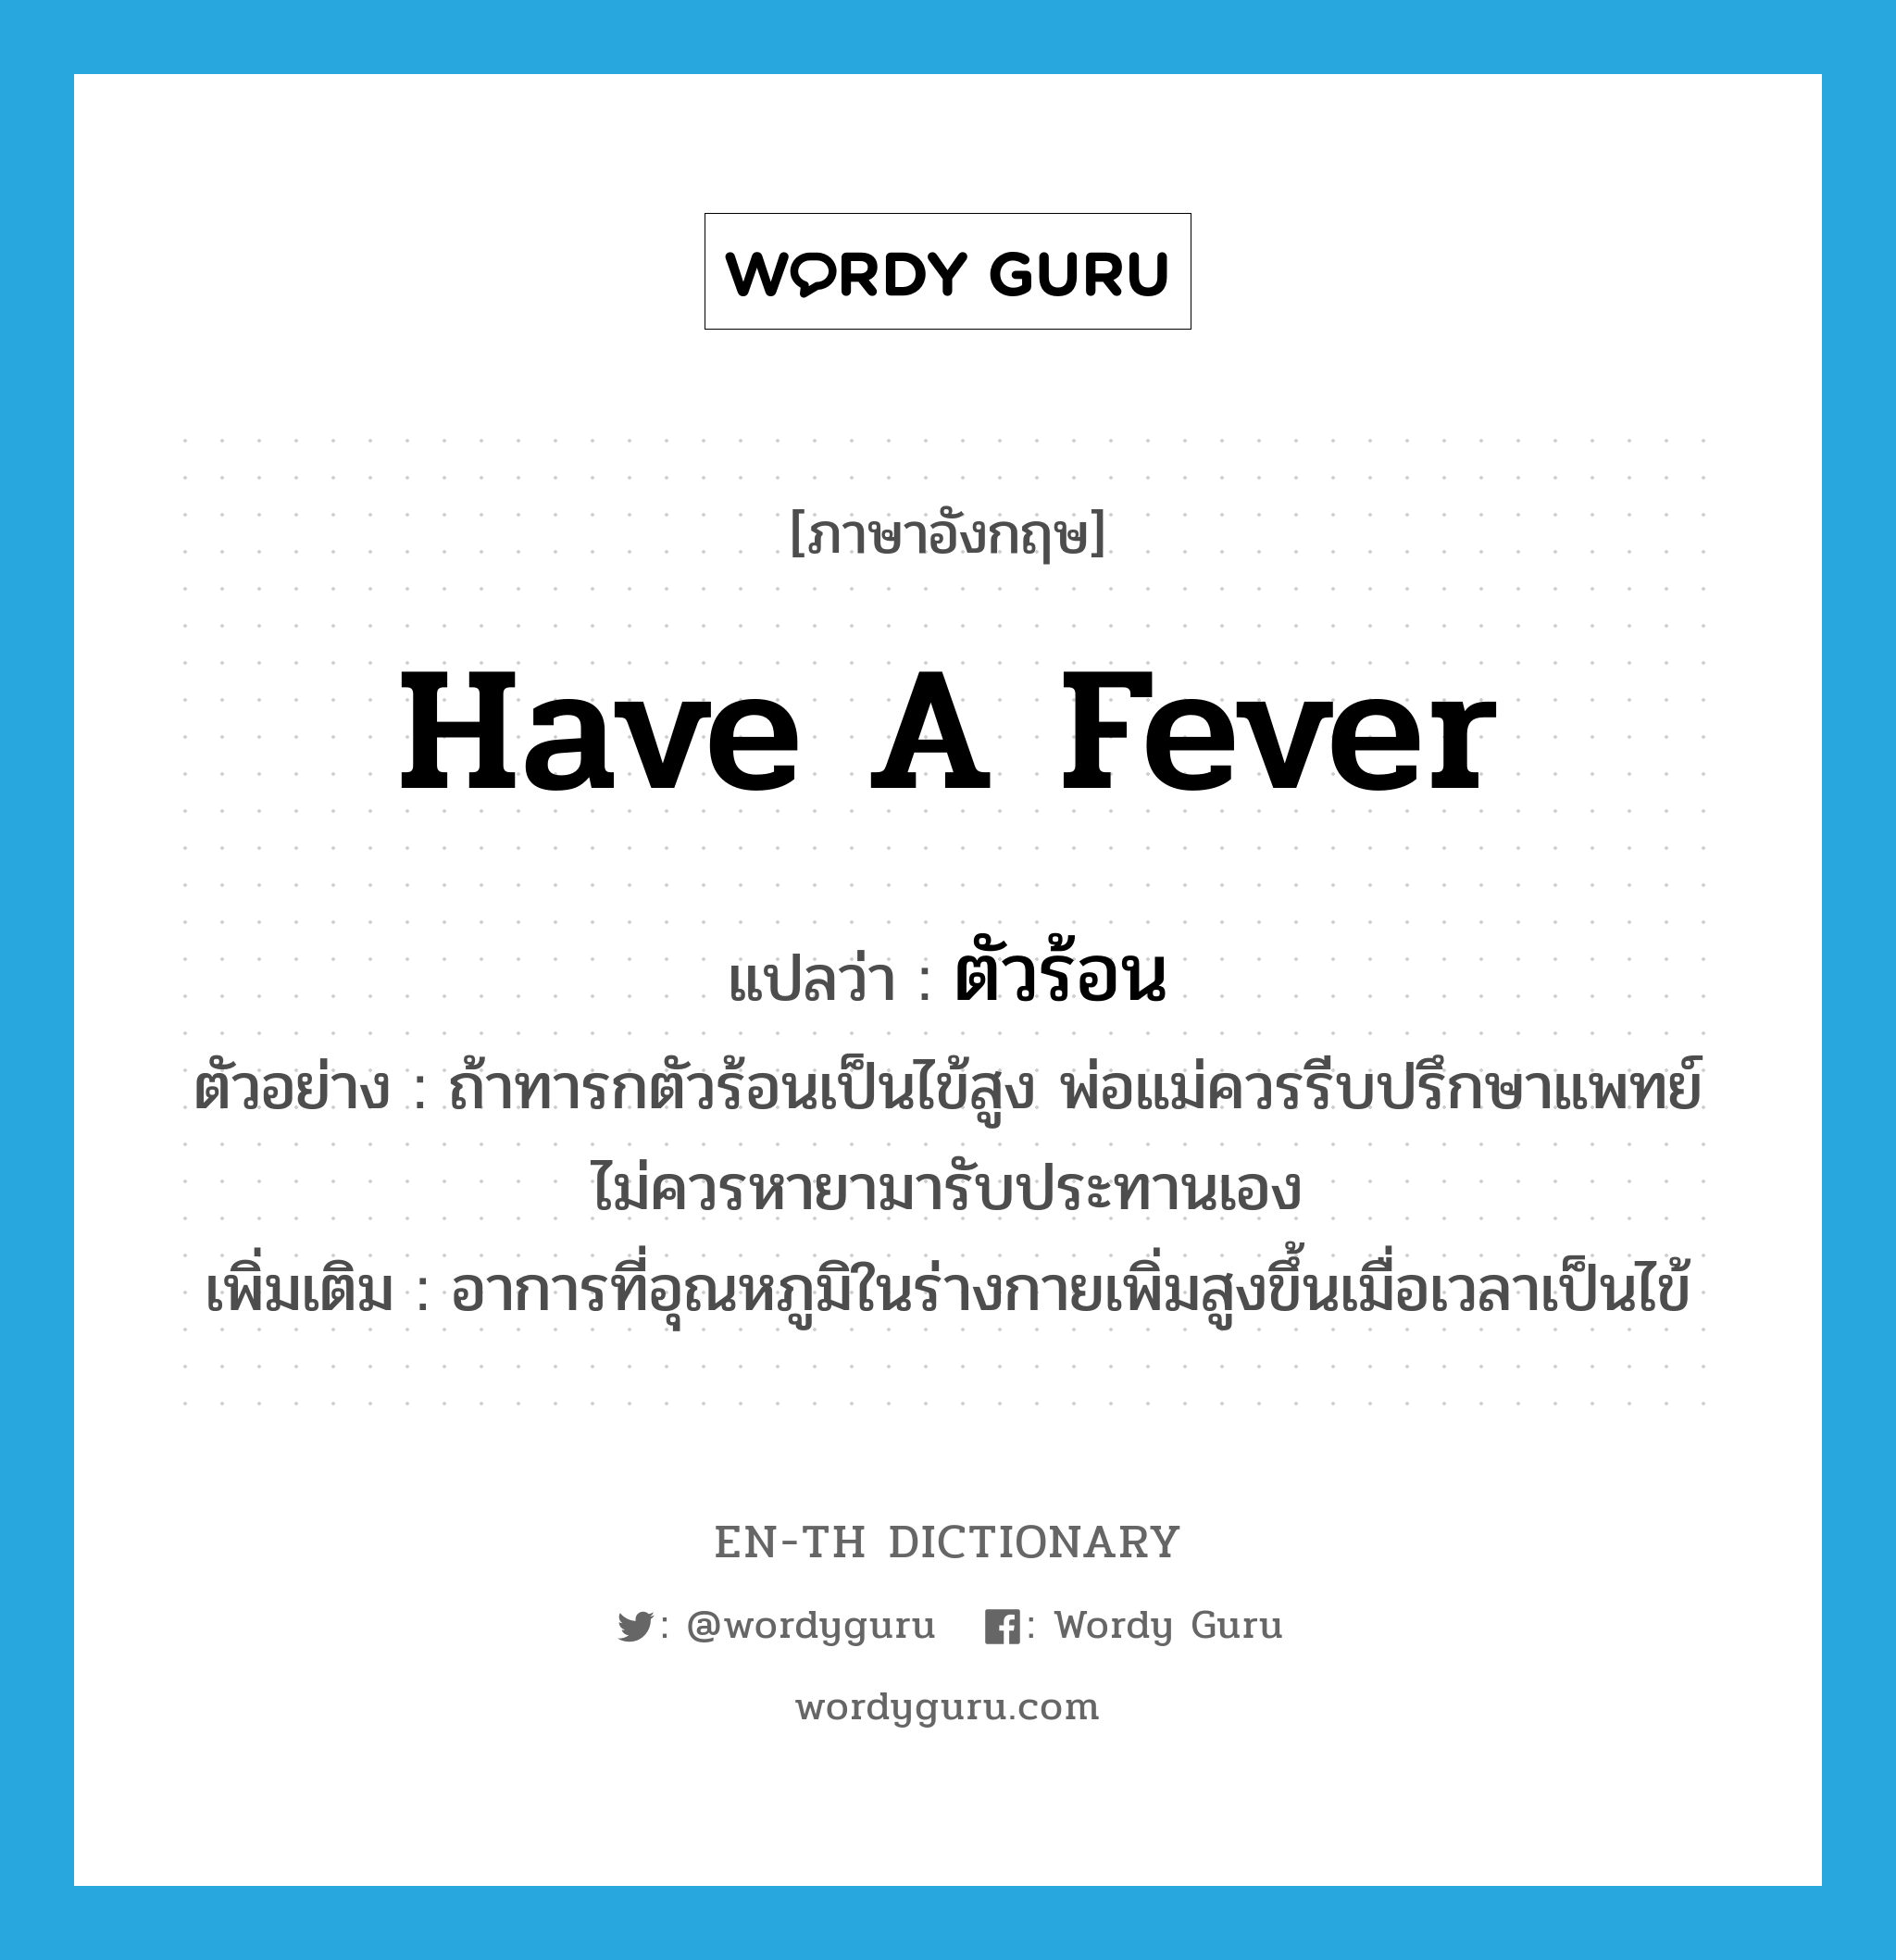 have a fever แปลว่า?, คำศัพท์ภาษาอังกฤษ have a fever แปลว่า ตัวร้อน ประเภท V ตัวอย่าง ถ้าทารกตัวร้อนเป็นไข้สูง พ่อแม่ควรรีบปรึกษาแพทย์ไม่ควรหายามารับประทานเอง เพิ่มเติม อาการที่อุณหภูมิในร่างกายเพิ่มสูงขึ้นเมื่อเวลาเป็นไข้ หมวด V